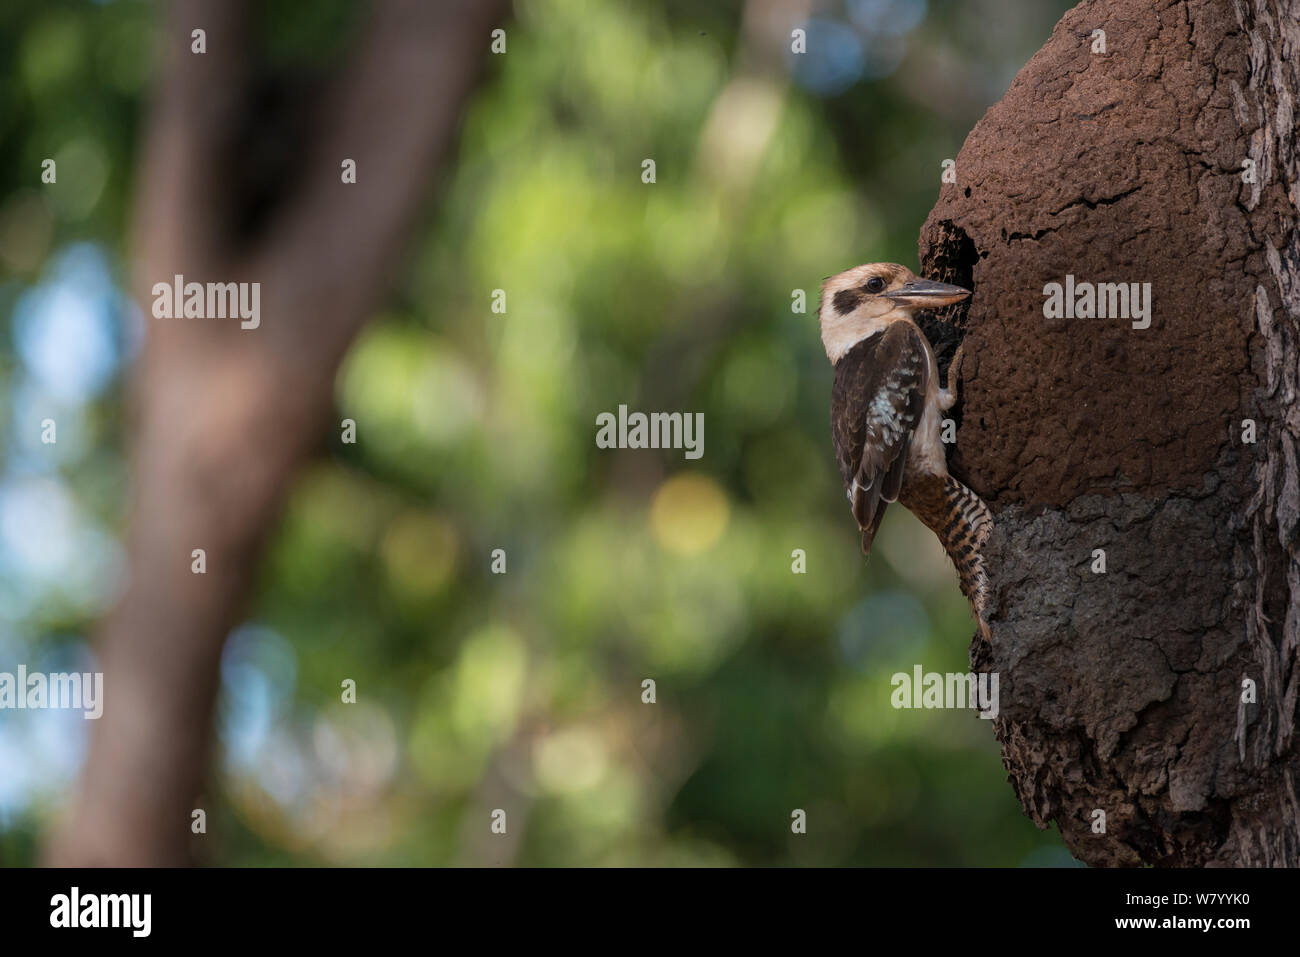 Laughing Kookaburra Dacelo novaeguineae) (prise de nicher en termitière, Queensland, Australie. Banque D'Images